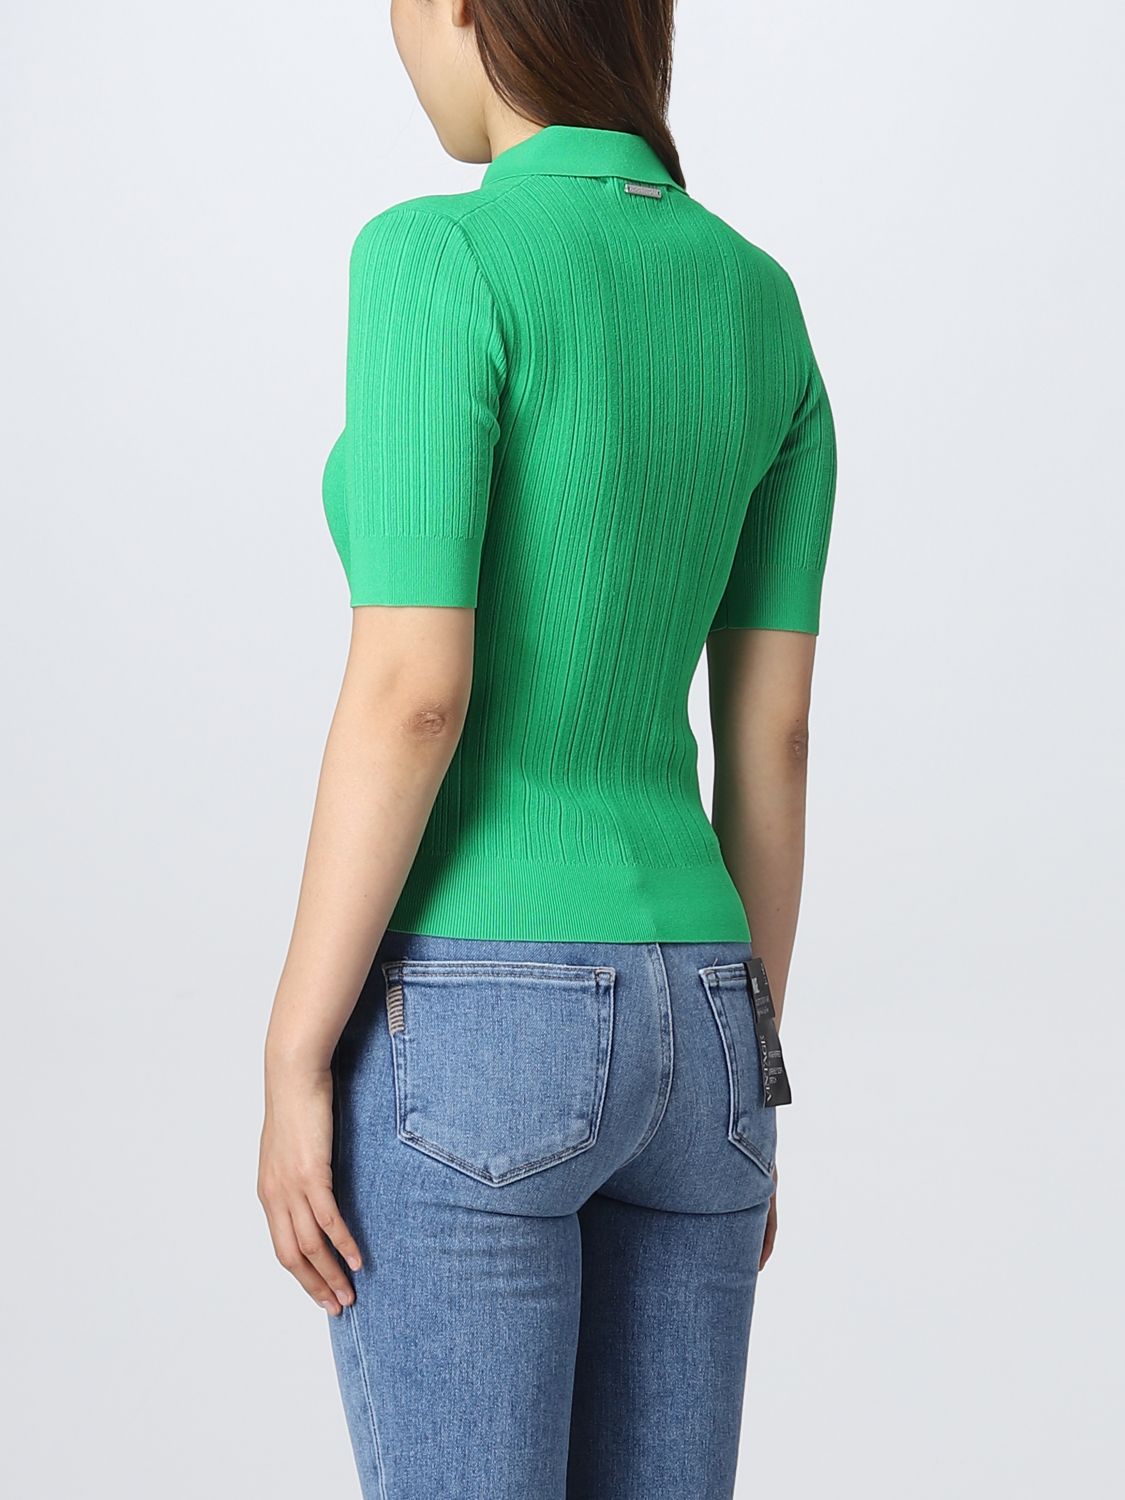 MICHAEL KORS: polo shirt for woman - Green | Michael Kors polo shirt  MS2600C33D online on 